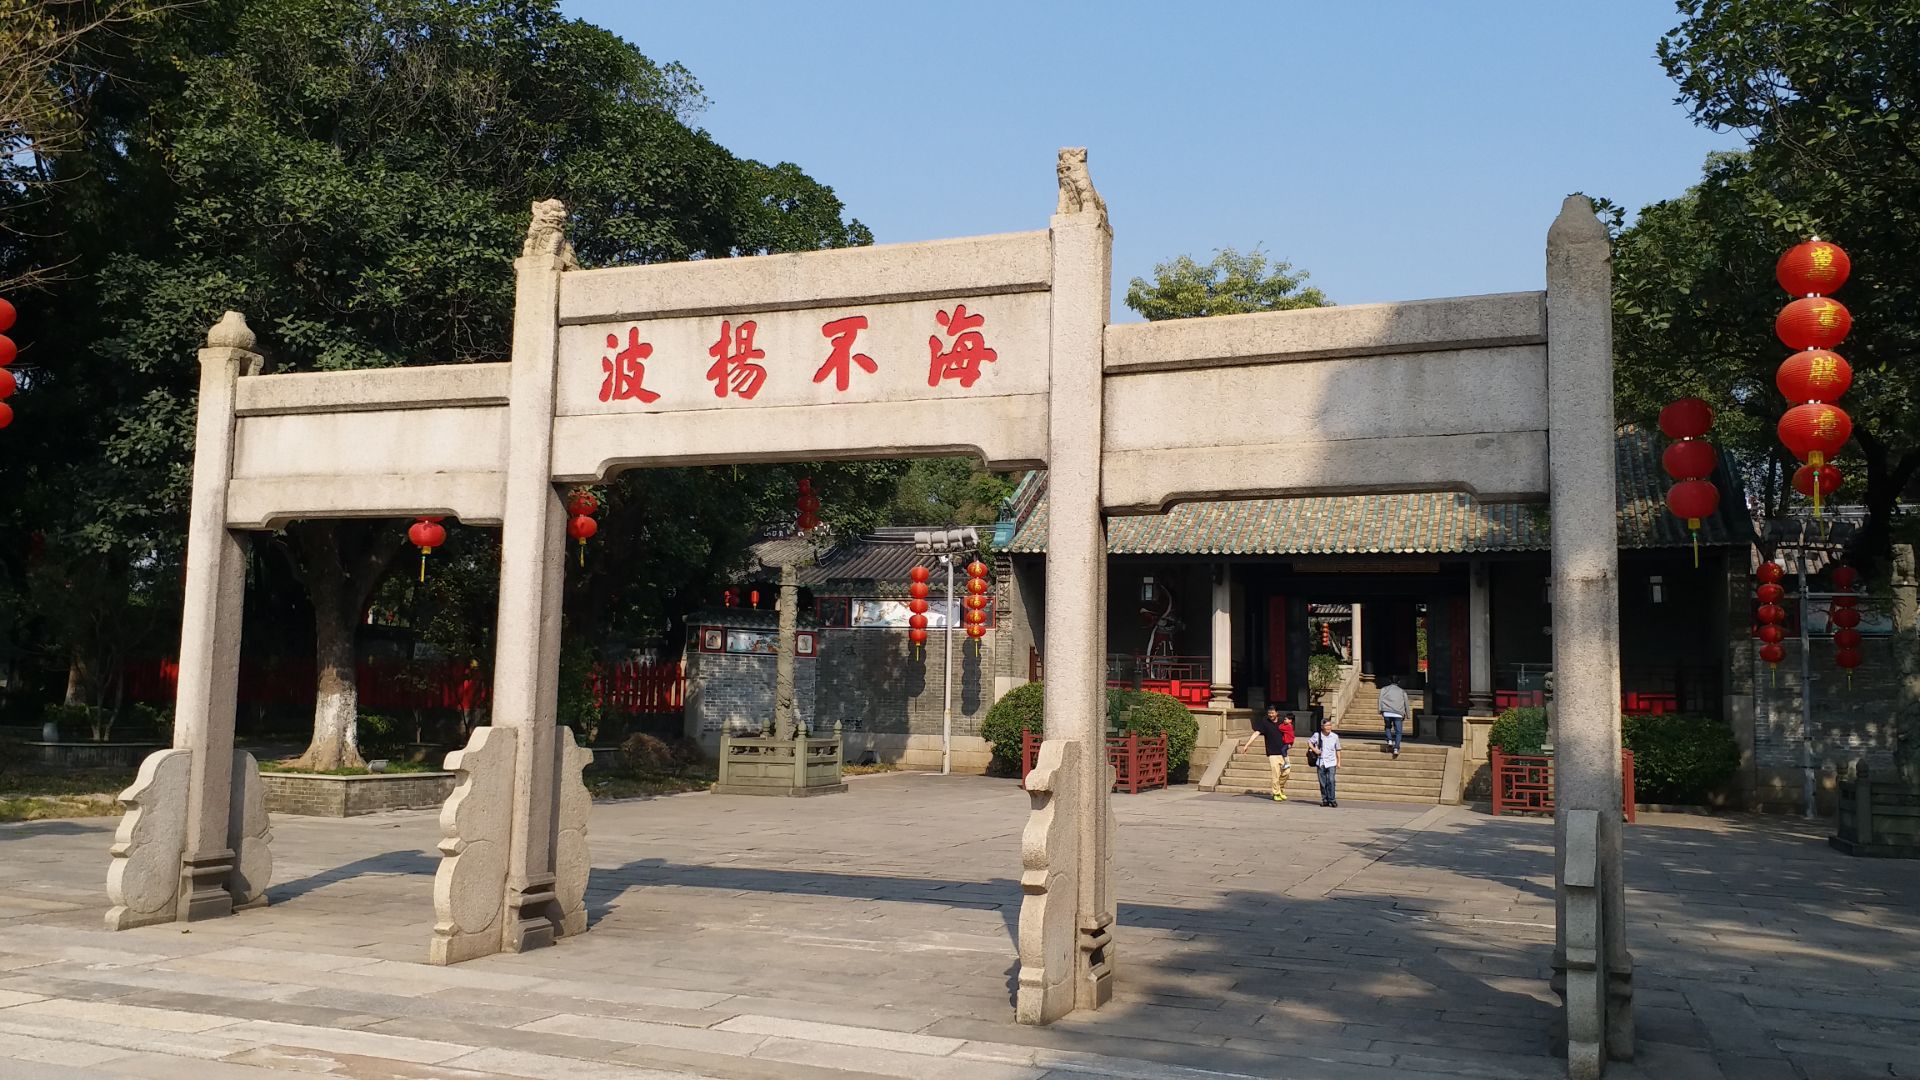 【携程攻略】广州南海神庙景点,南海神庙位于广州黄埔区,是古代南越